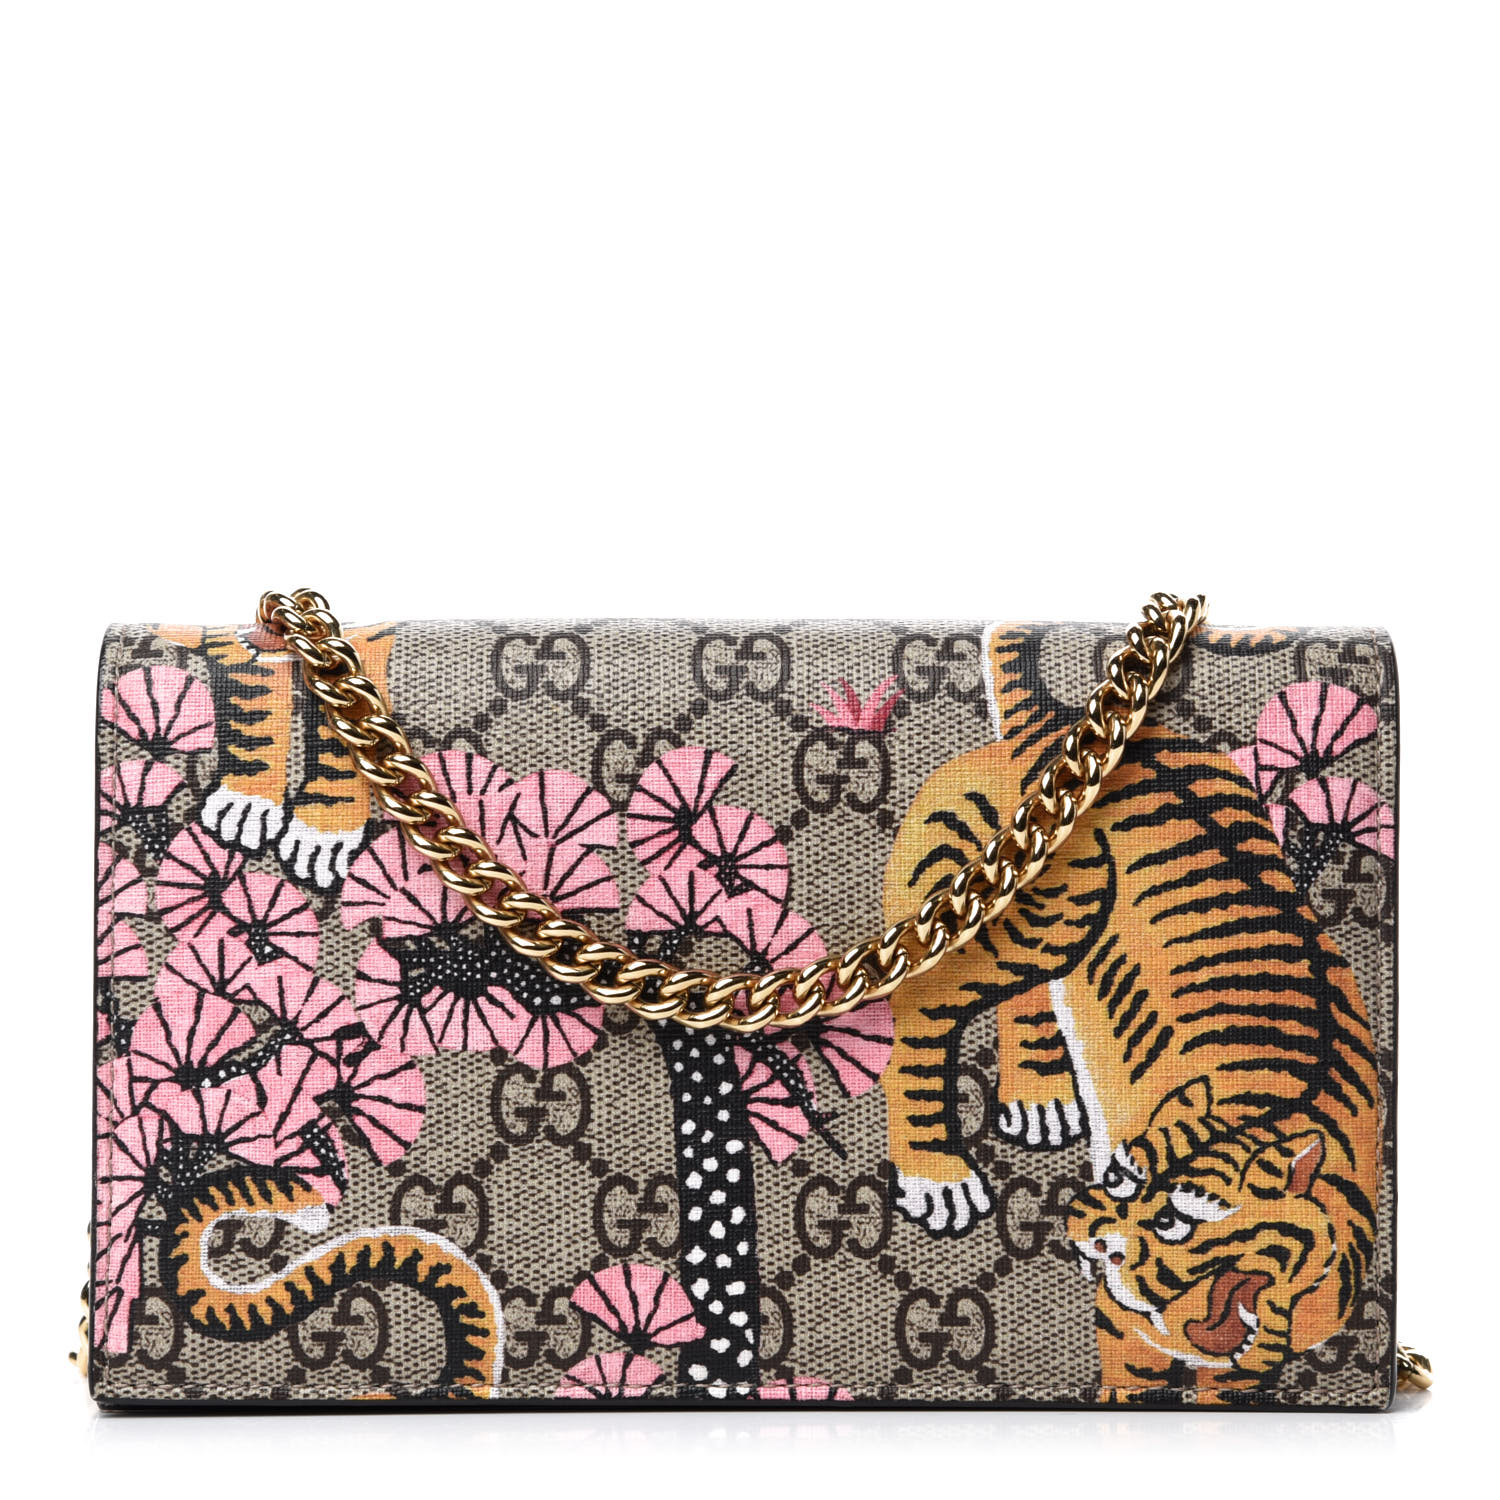 gucci bengal tiger wallet